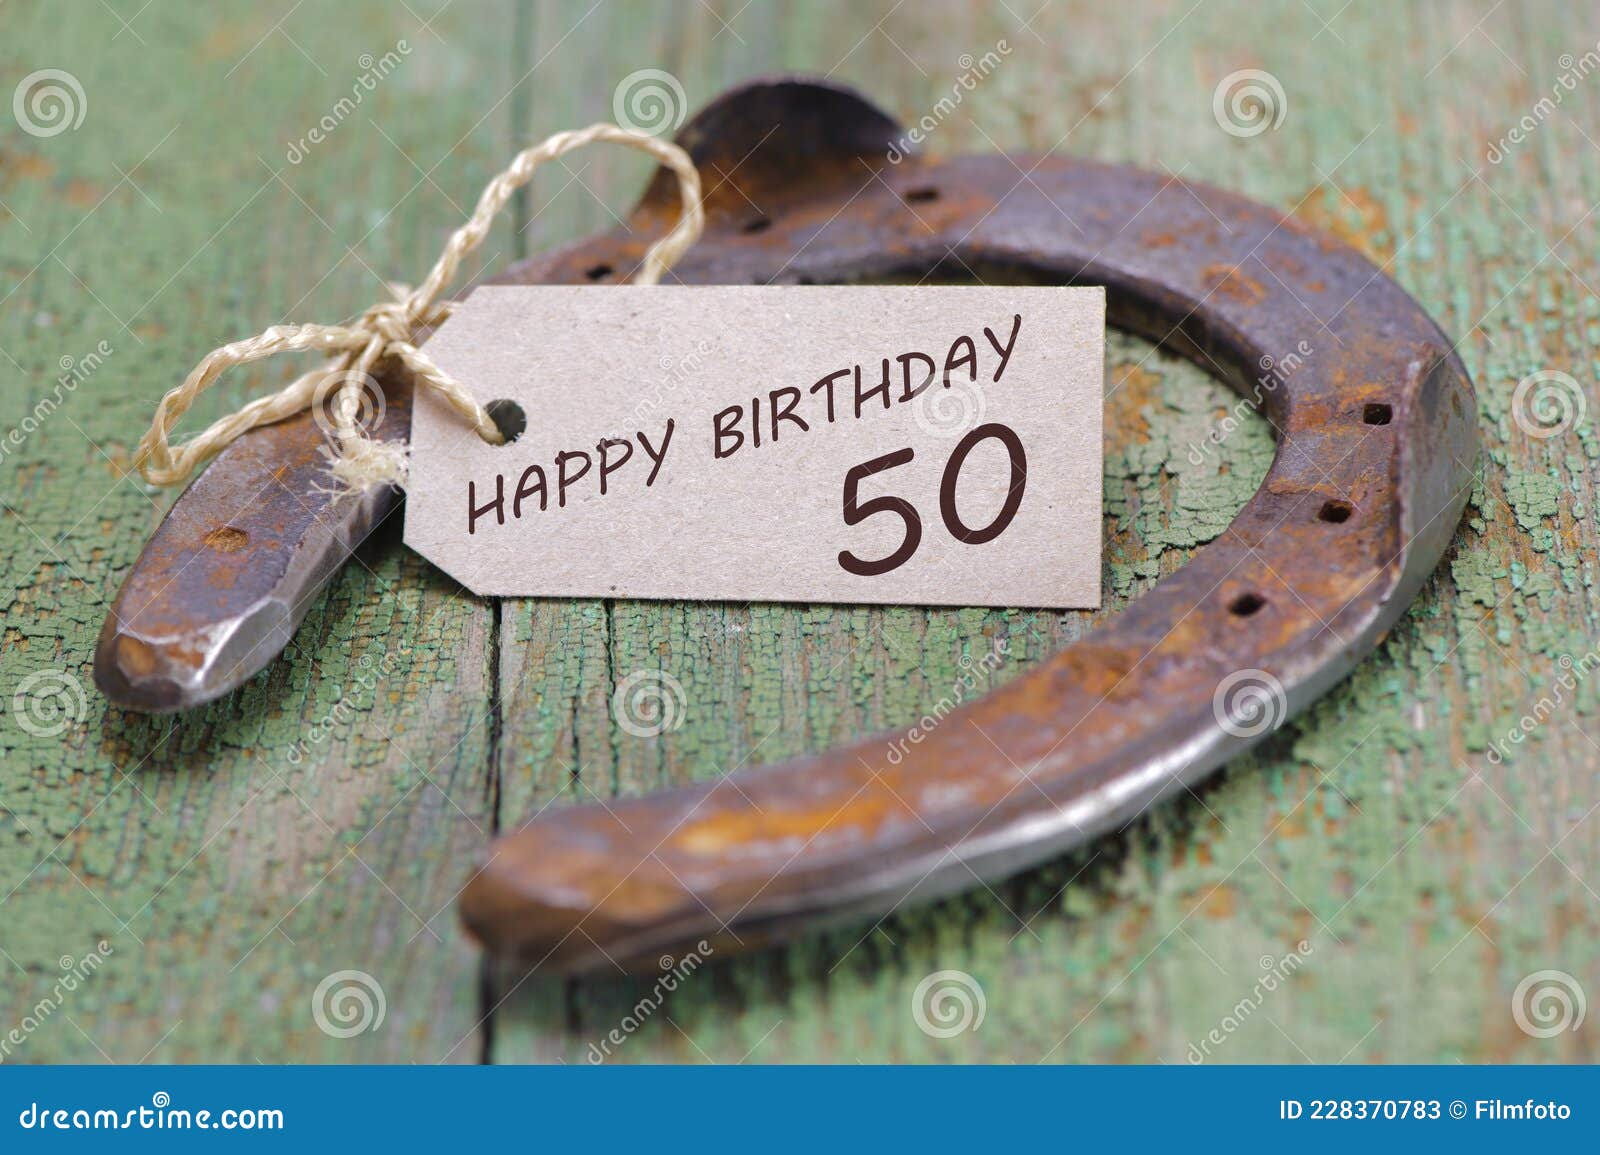 祝你50岁生日快乐 库存照片. 图片 包括有 概念, 飞行, 玻璃, 复制, 乐趣, 消息, 烟花, 祝贺 - 223627472